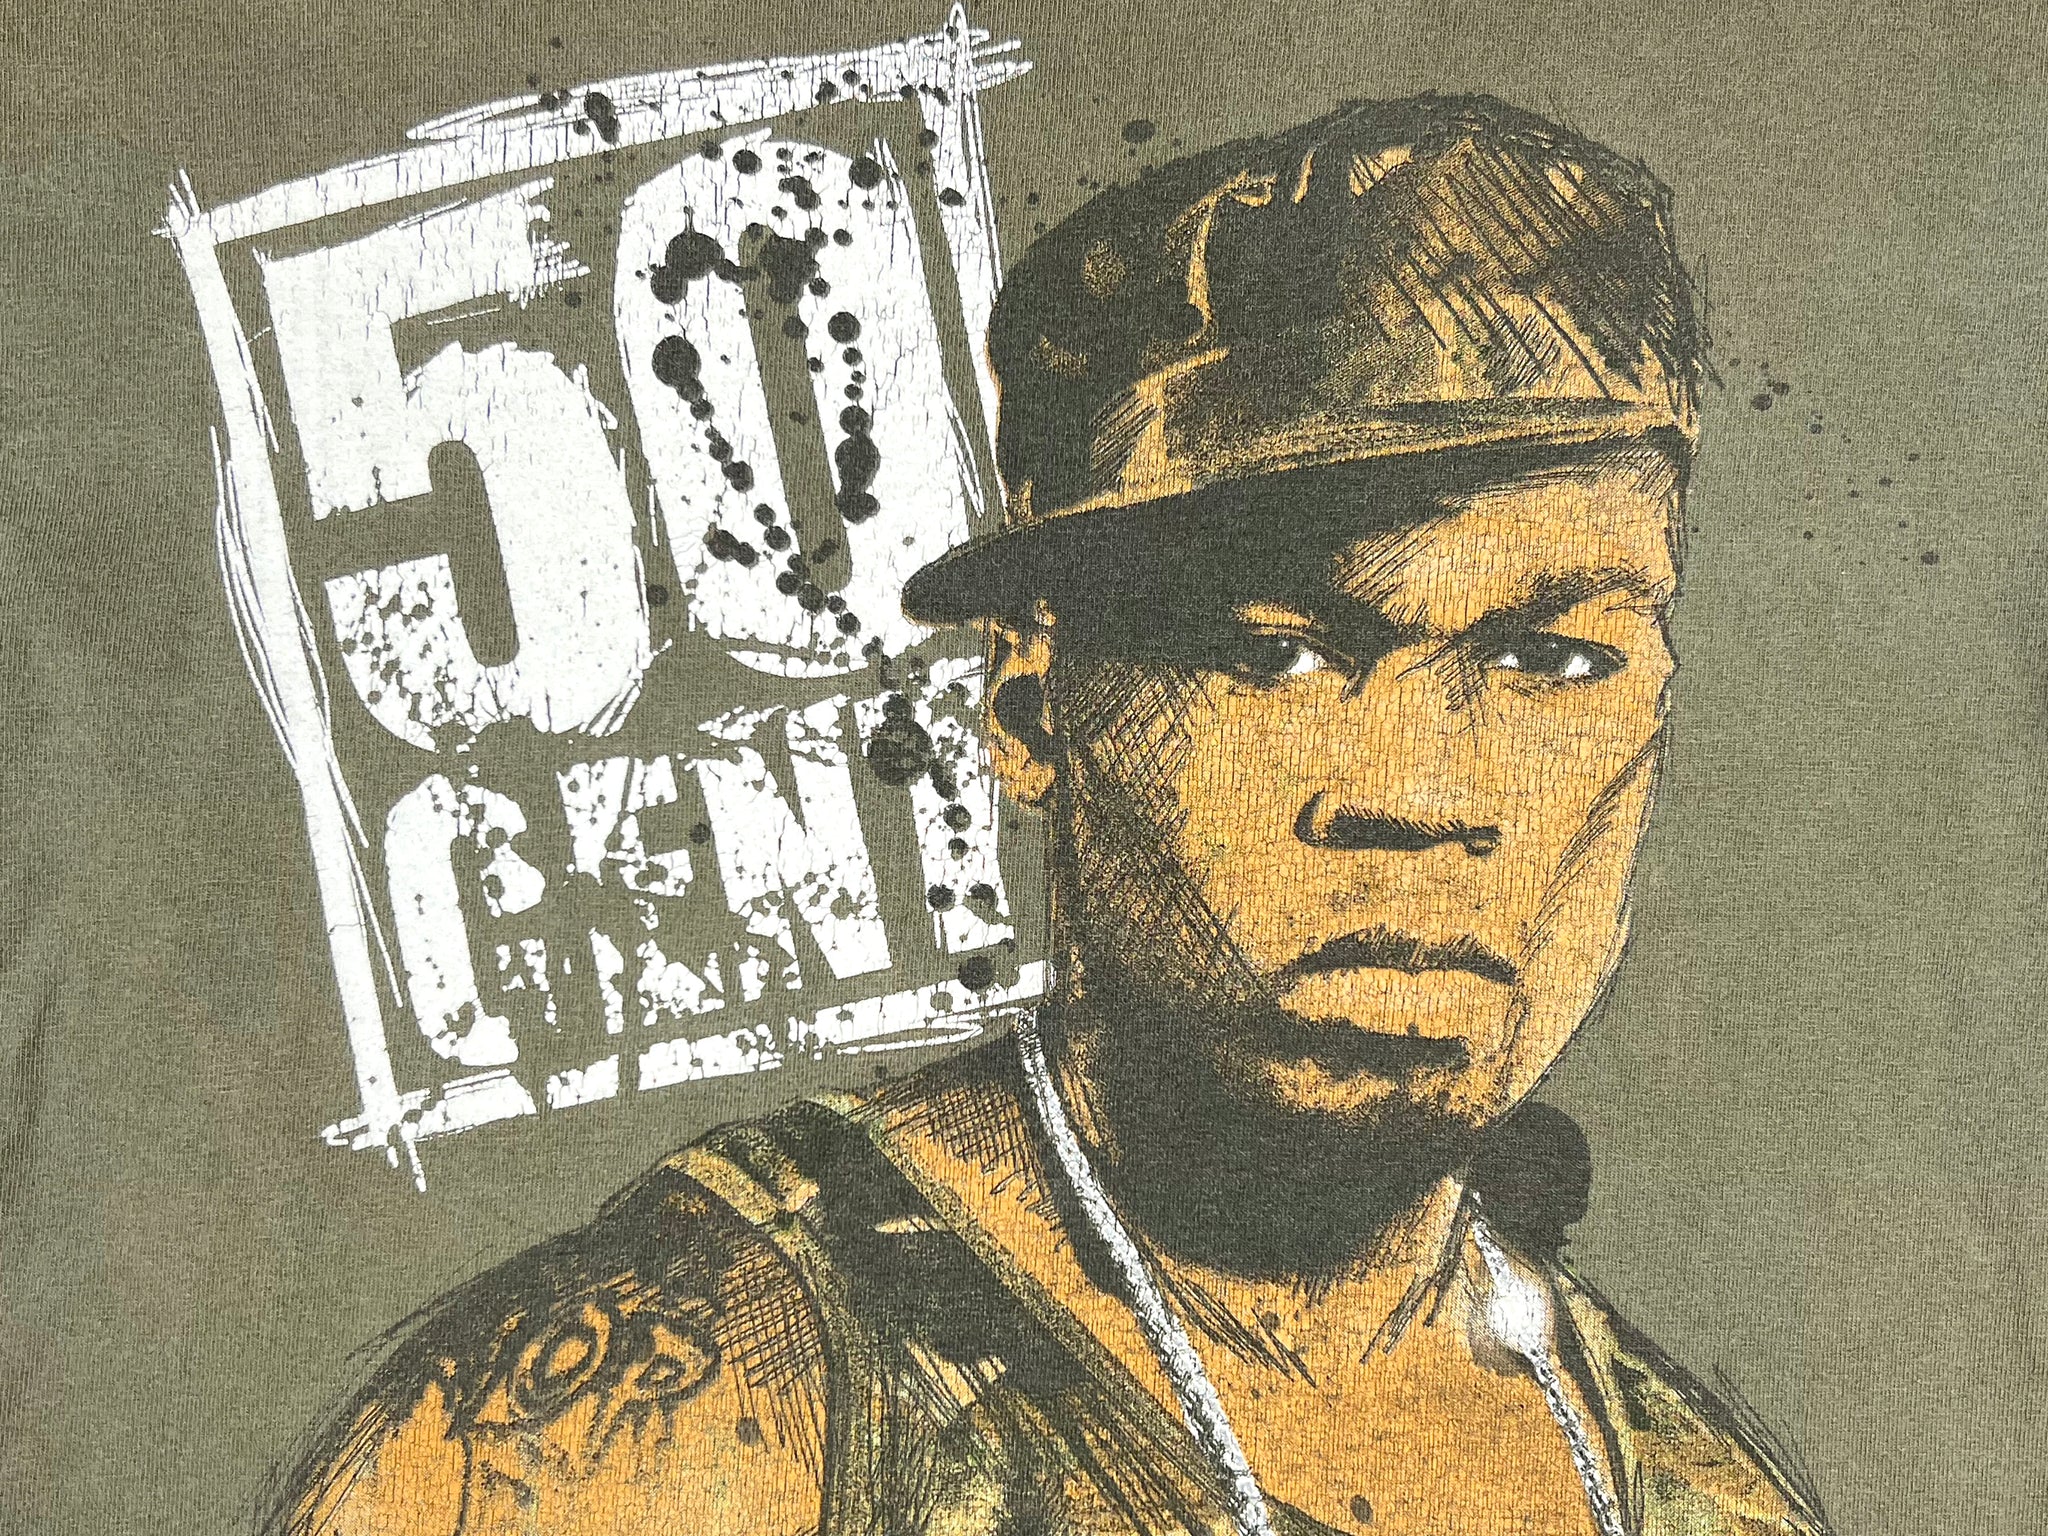 50 Cent T-Shirt